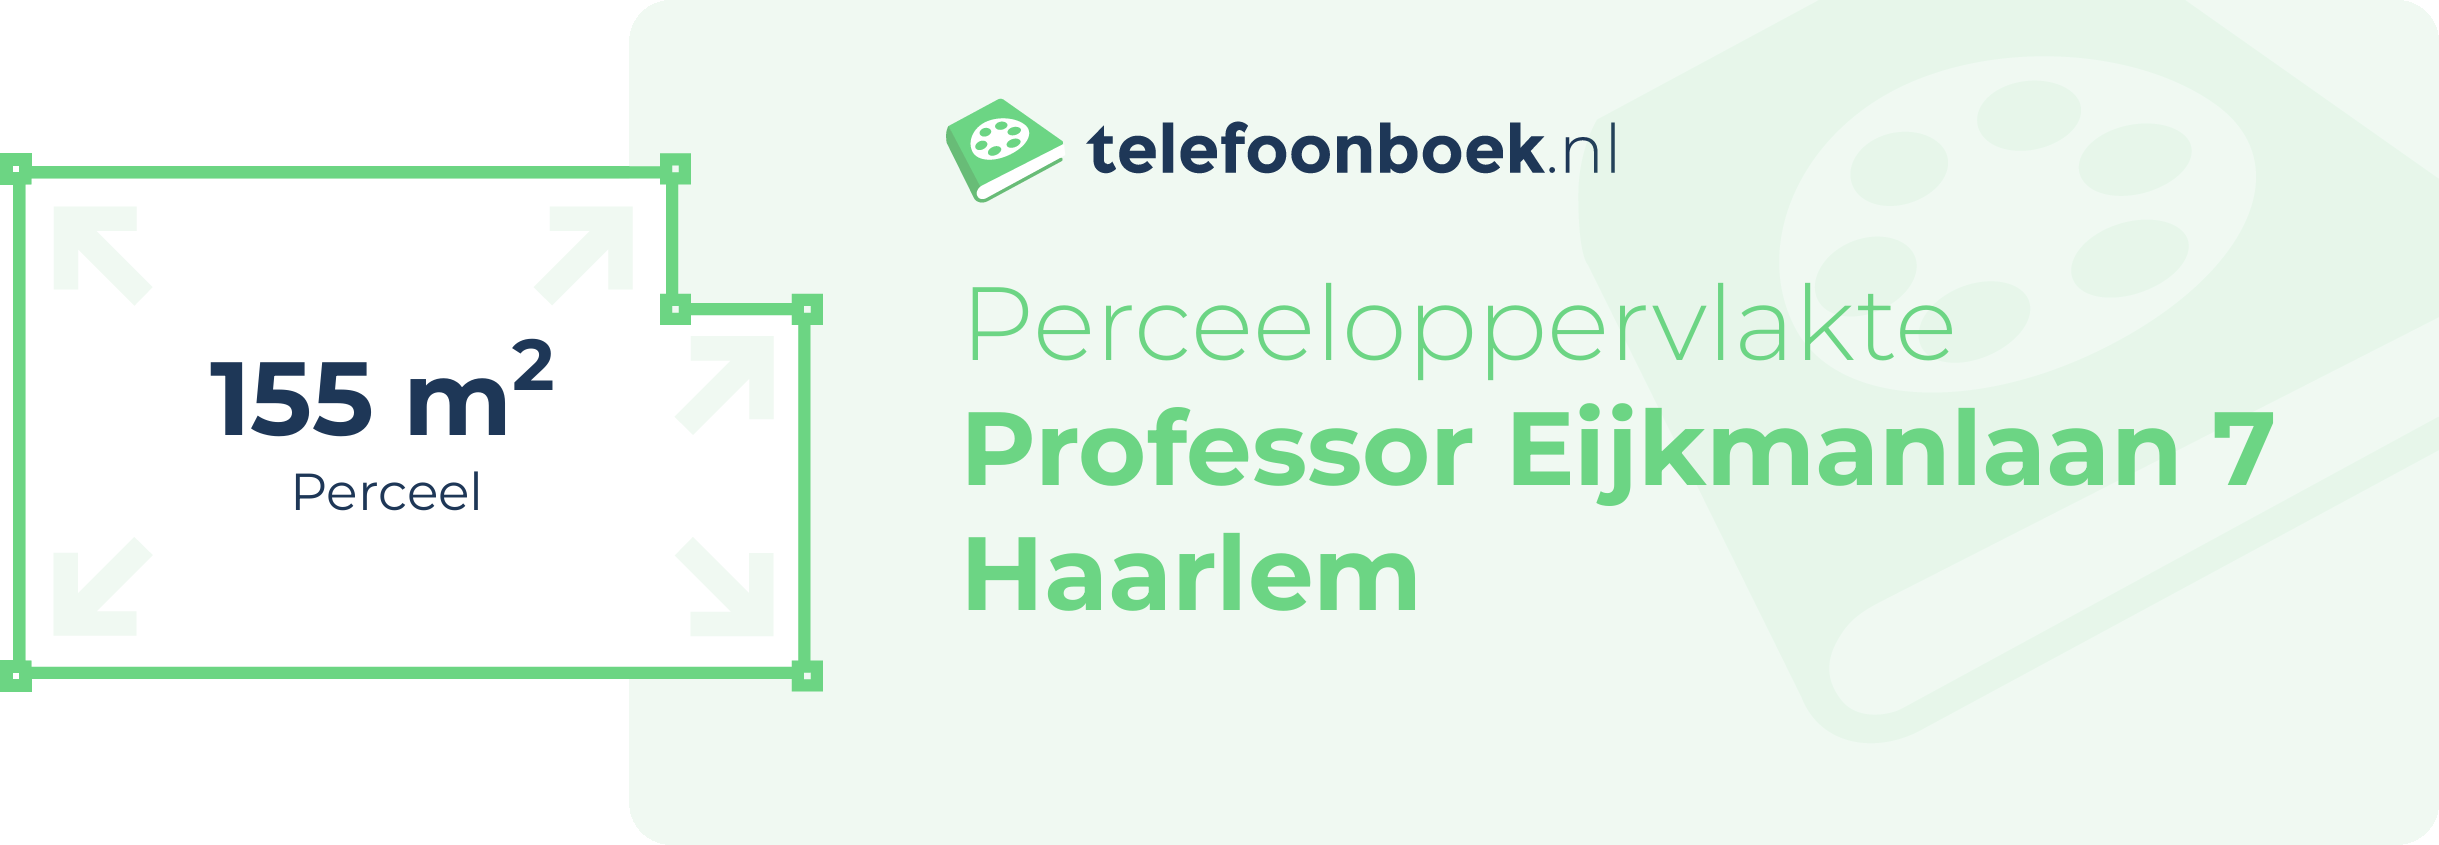 Perceeloppervlakte Professor Eijkmanlaan 7 Haarlem